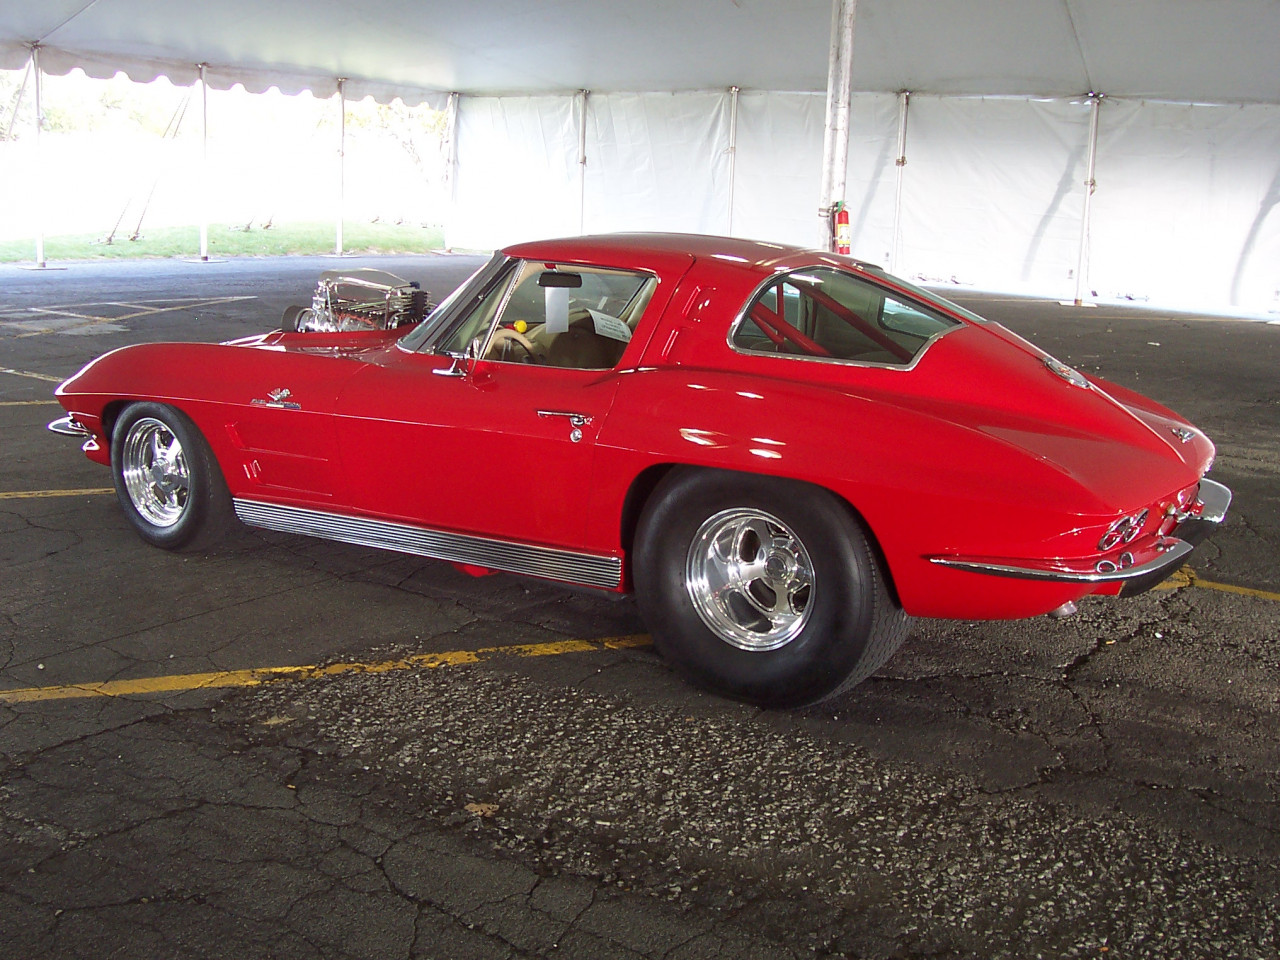 How we appraise a Classic Corvette